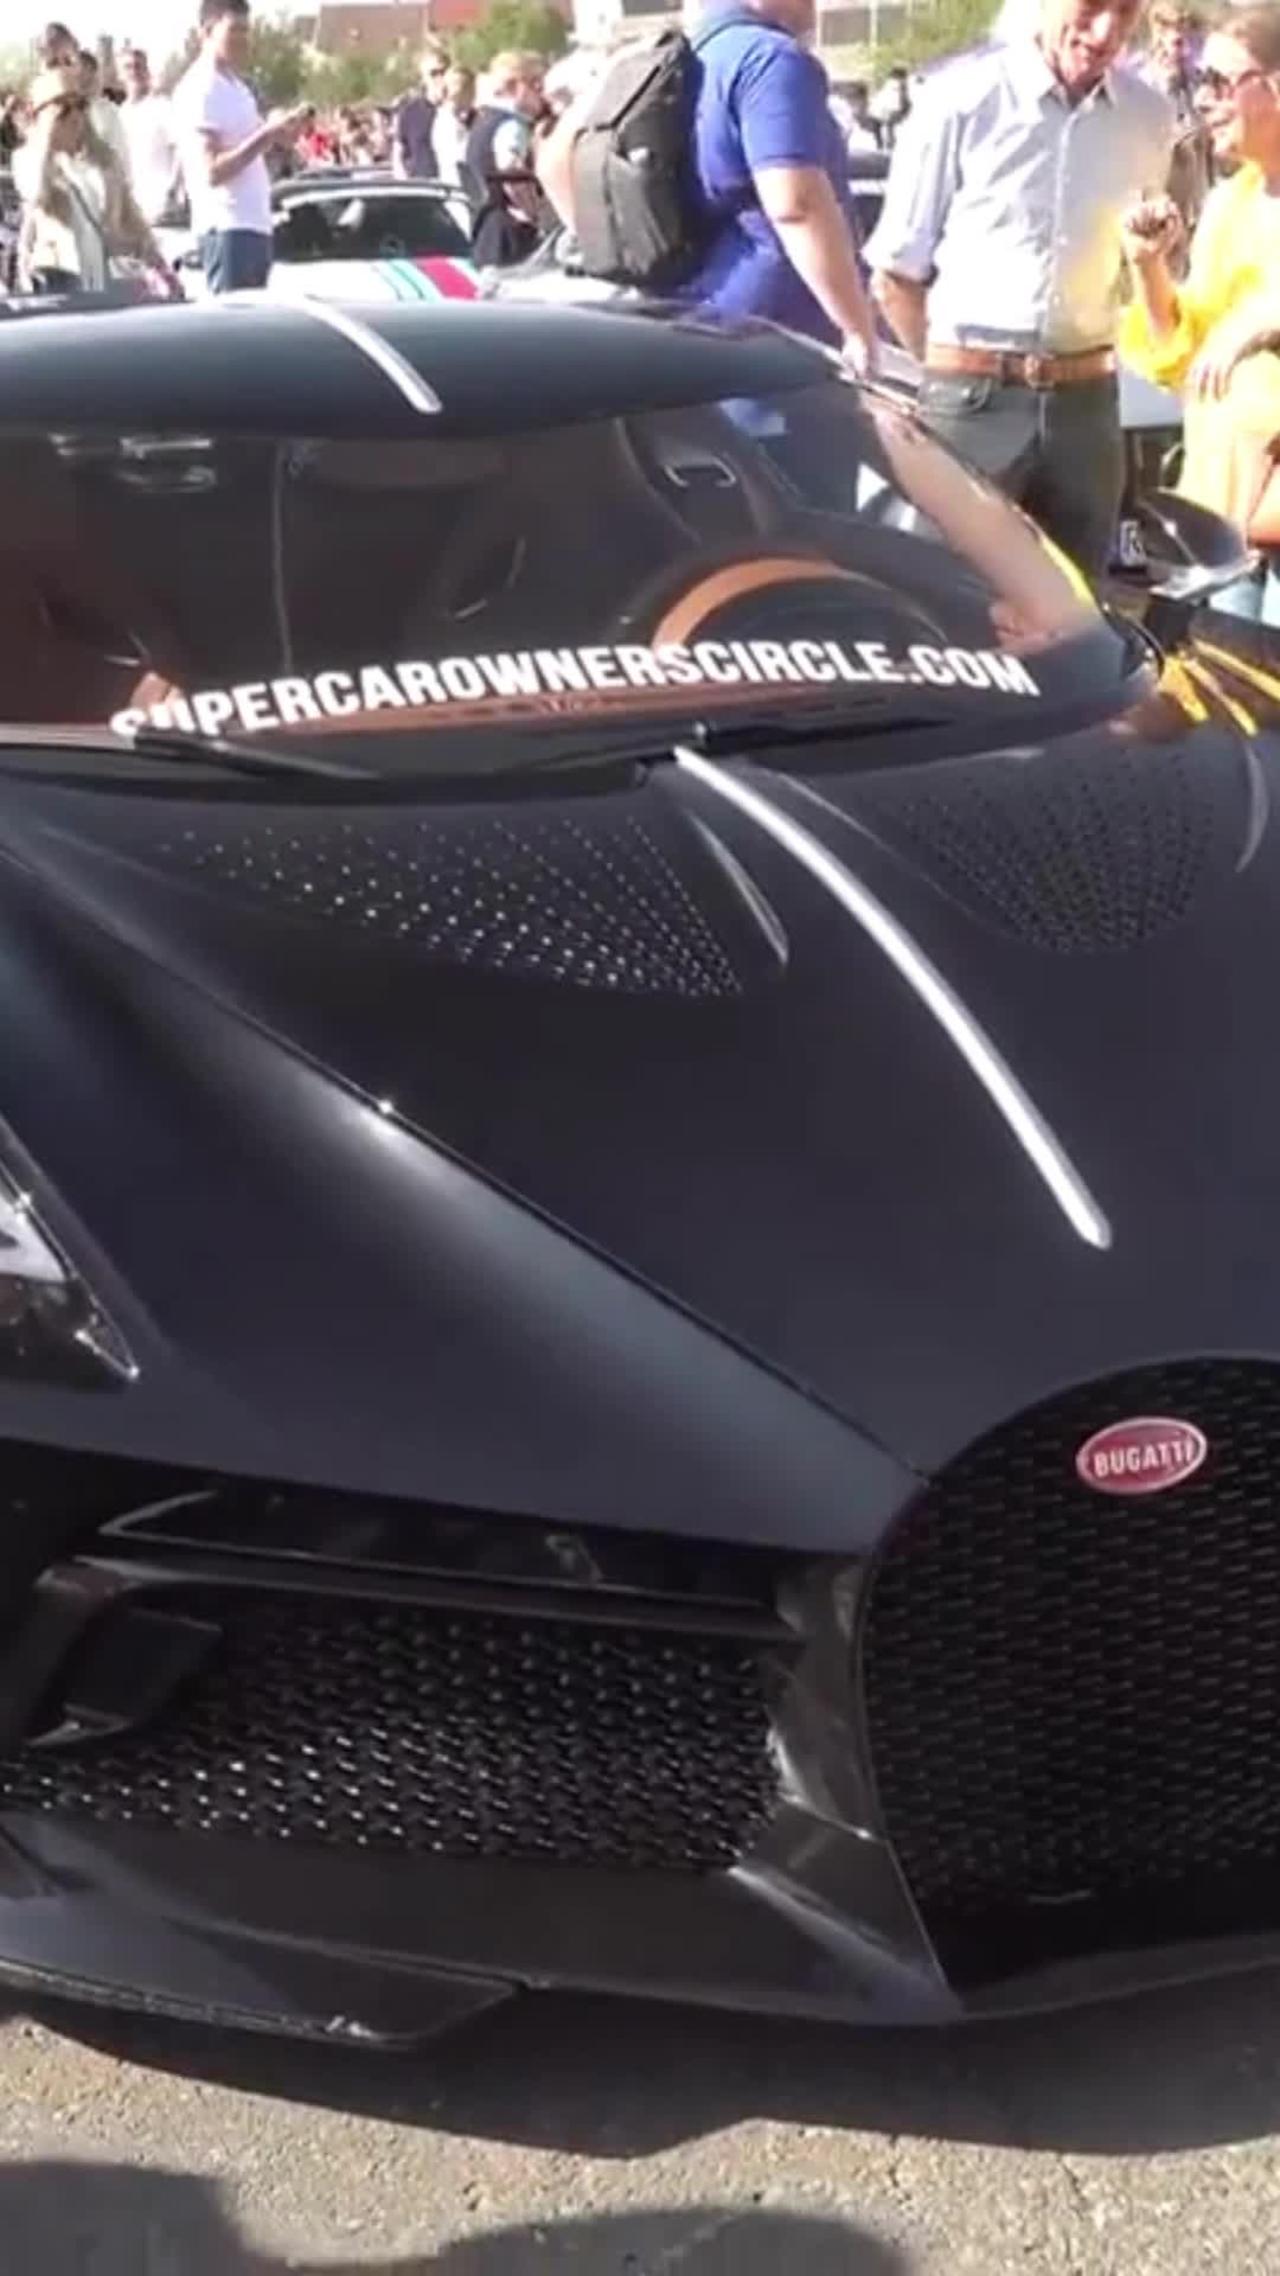 The $17M Bugatti La Voiture Noire